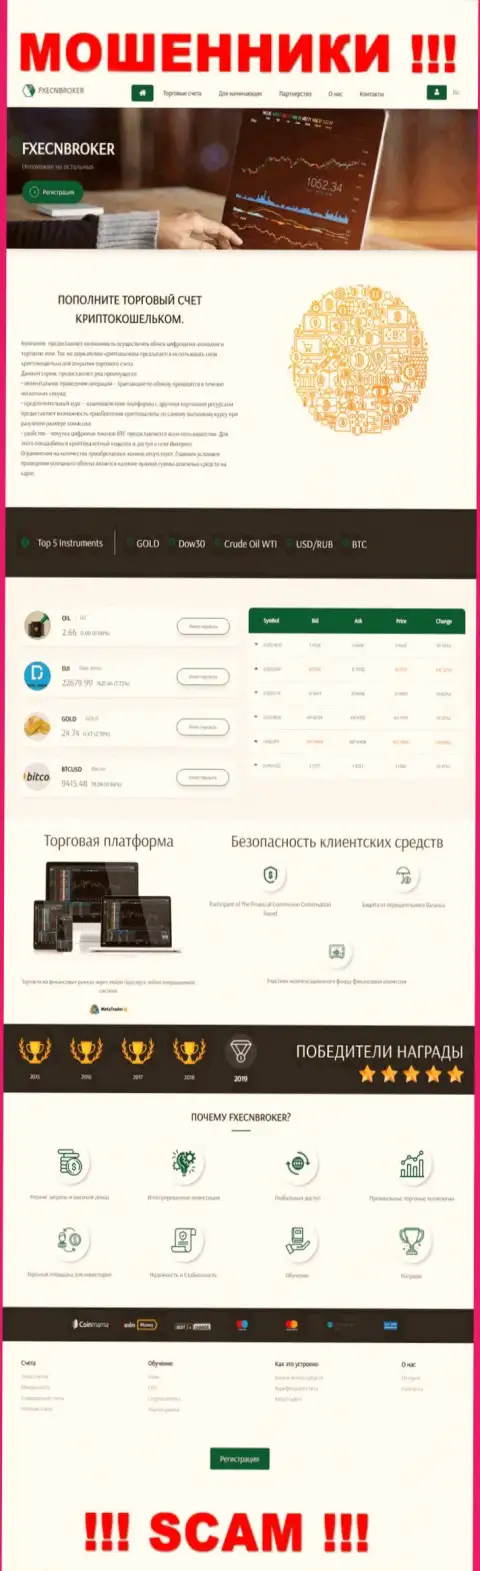 Обзор официального сайта мошенников ФИксЕСН Брокер